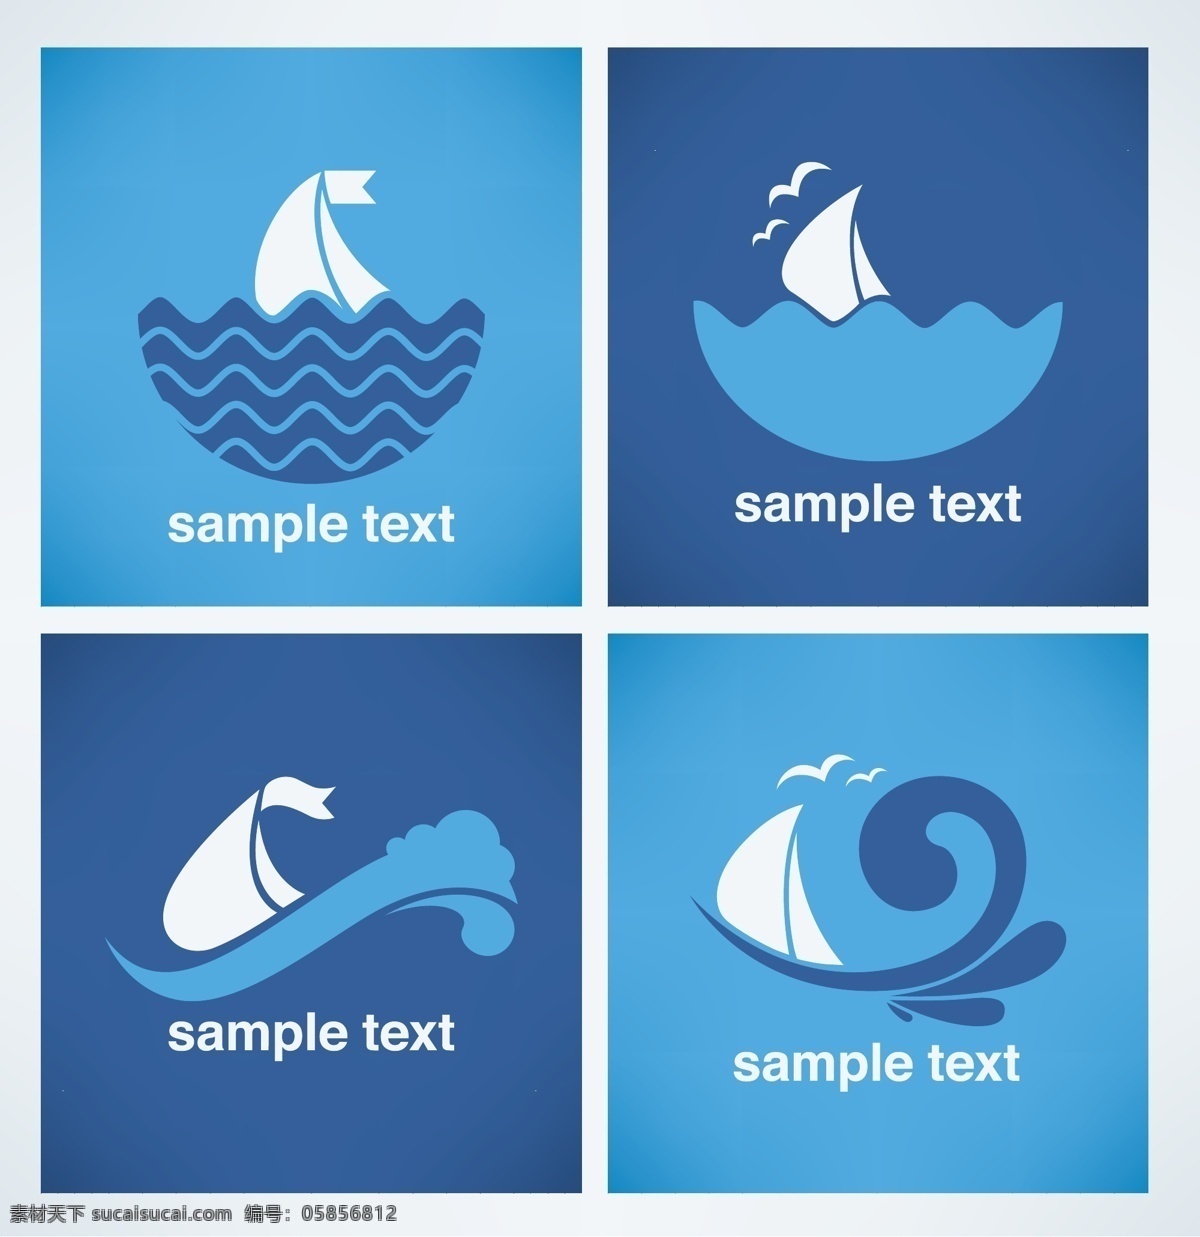 海浪 帆船 矢量 图标 海浪帆船 矢量图标 矢量素材 logo 标志图标 其他图标